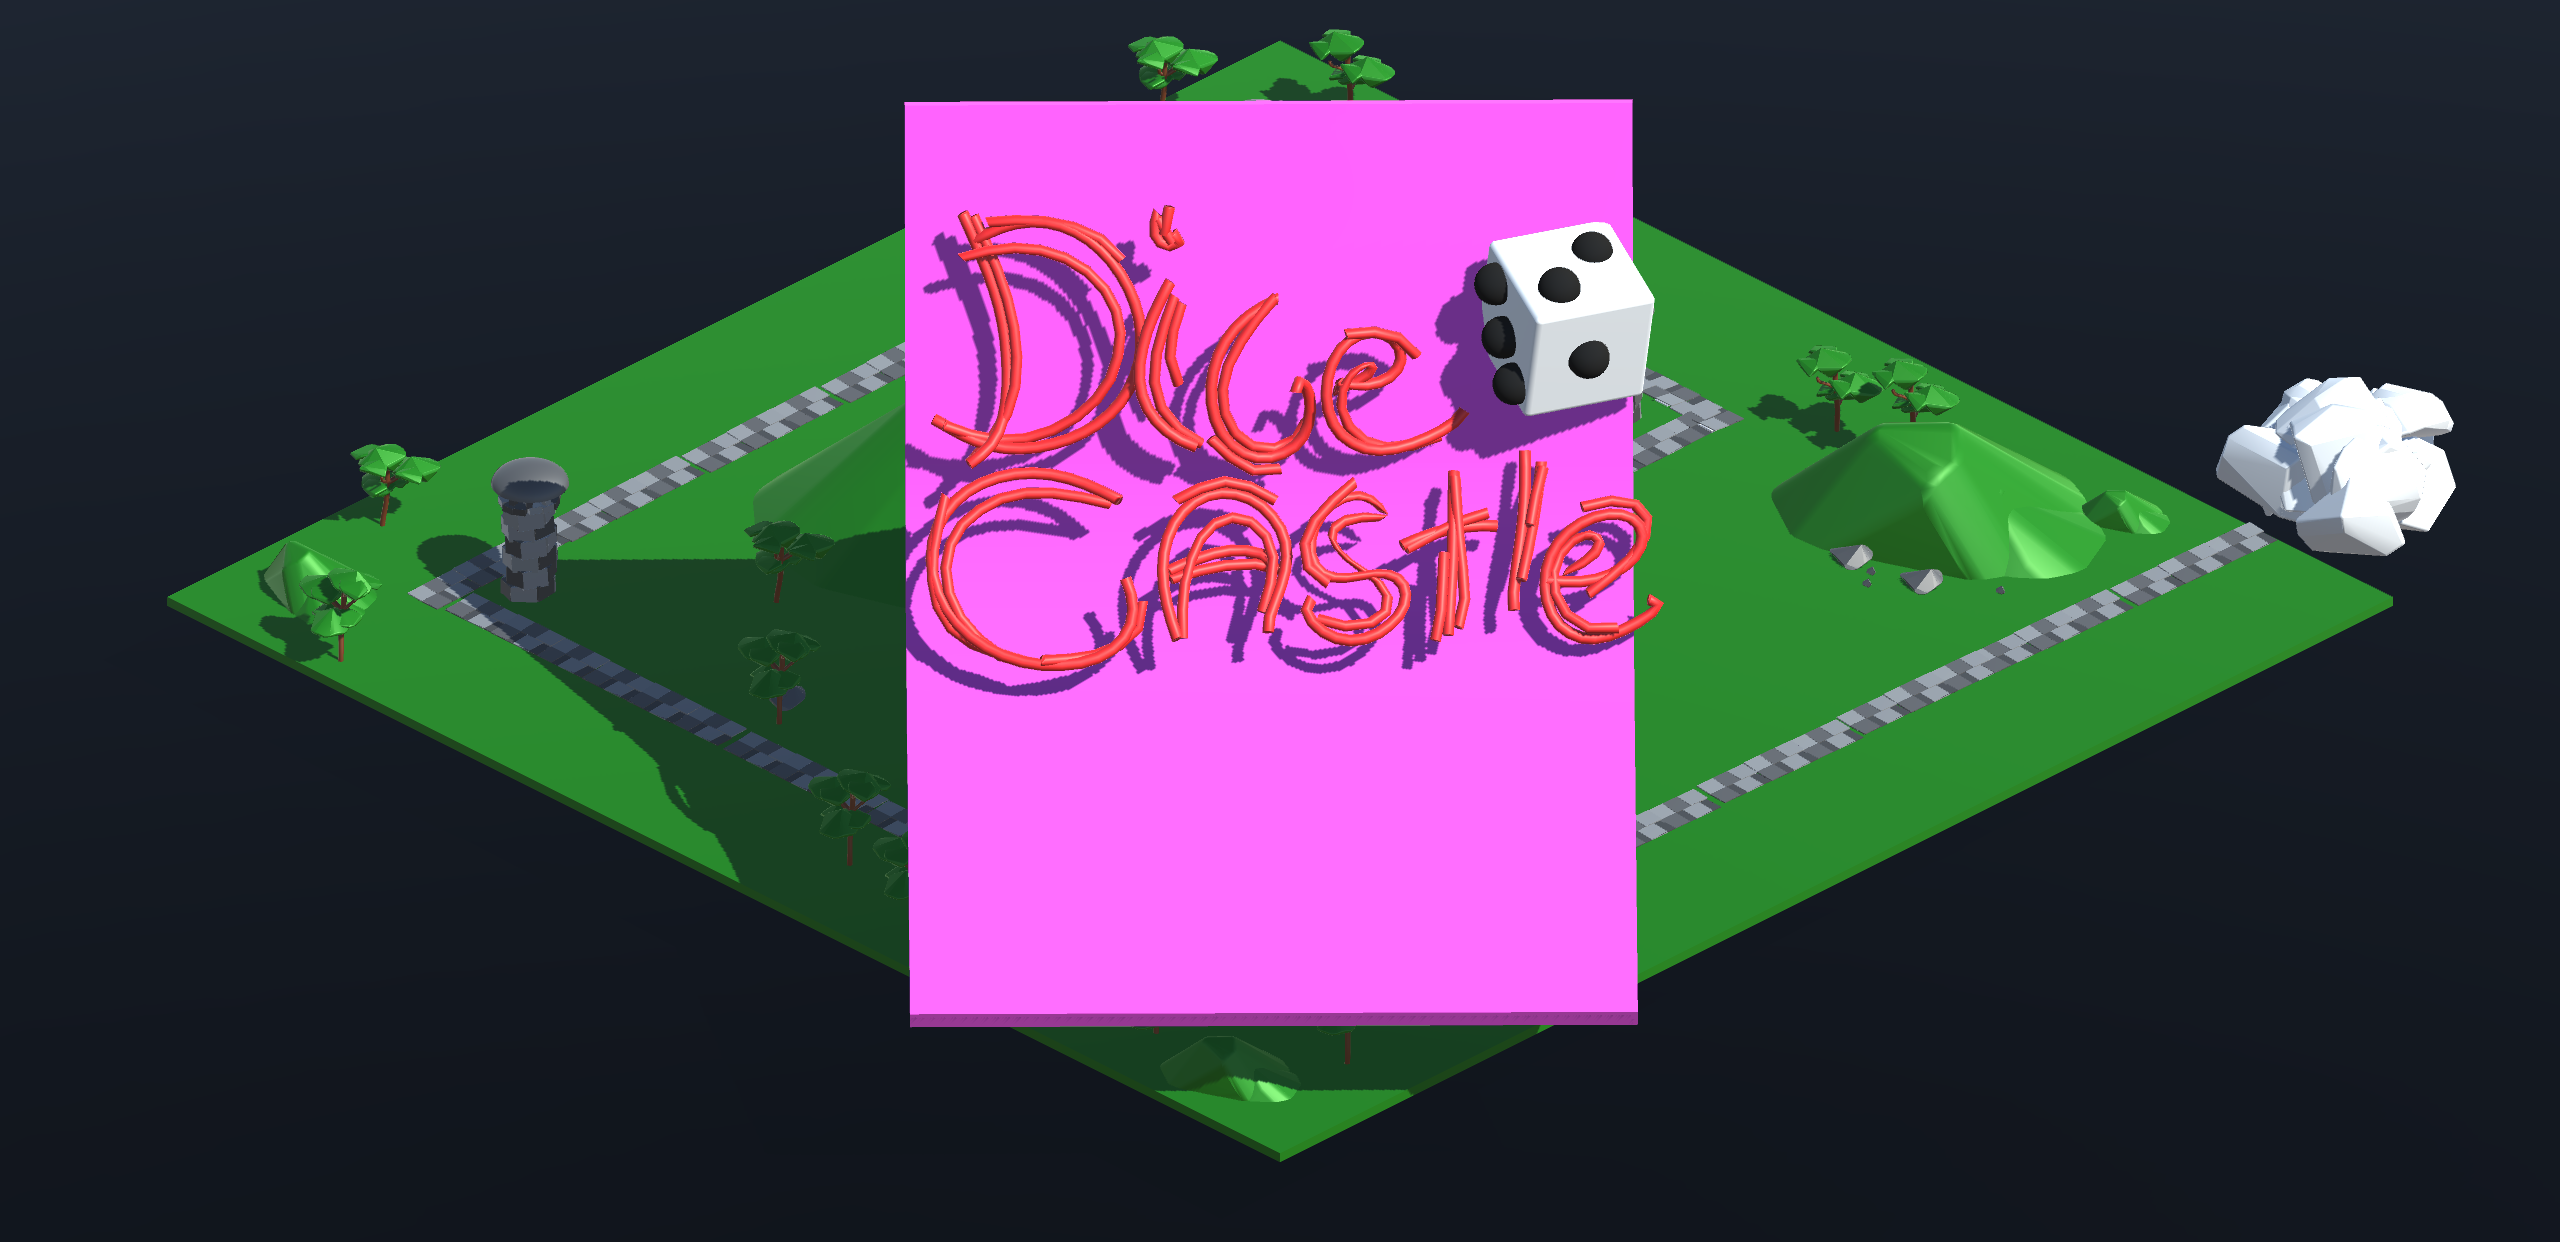 Dice Castle